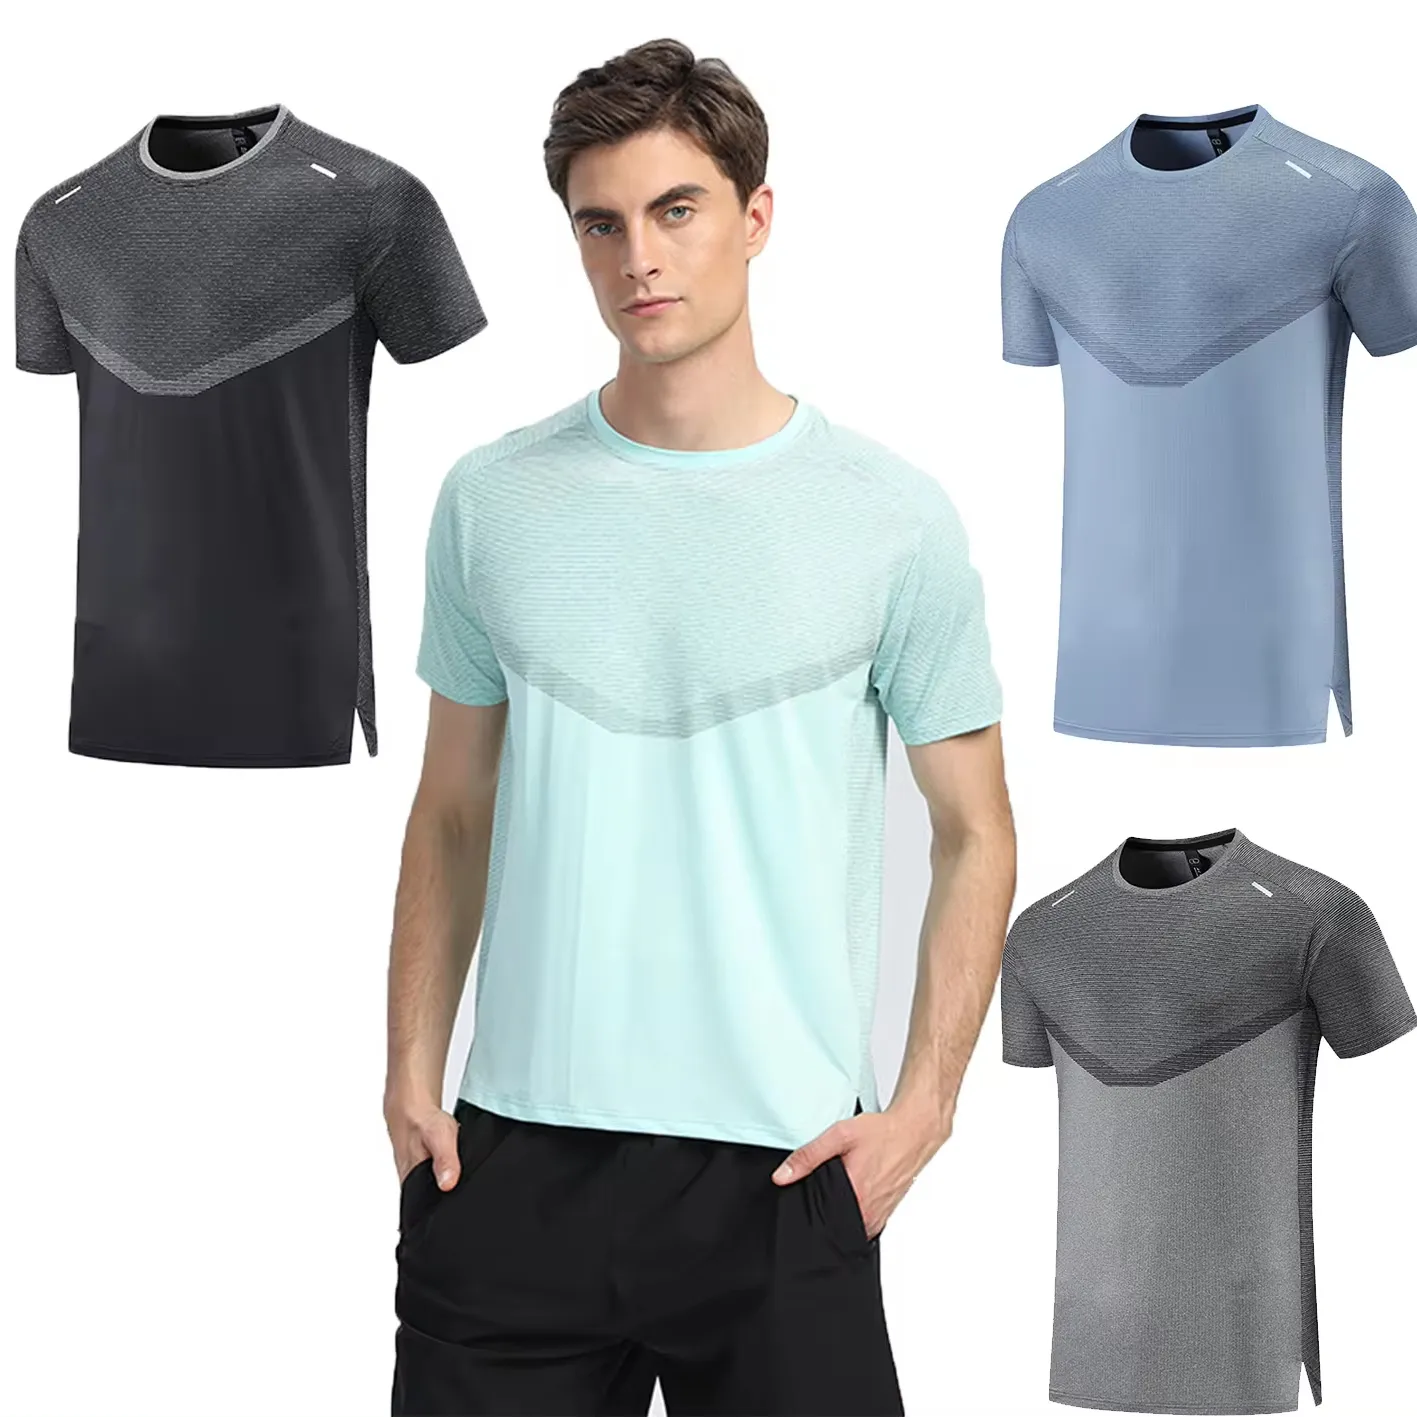 Özel logo fabrika stok fitness spor t-shirt erkek polyester malzeme sıkı uydurma çalışan spor spor spor